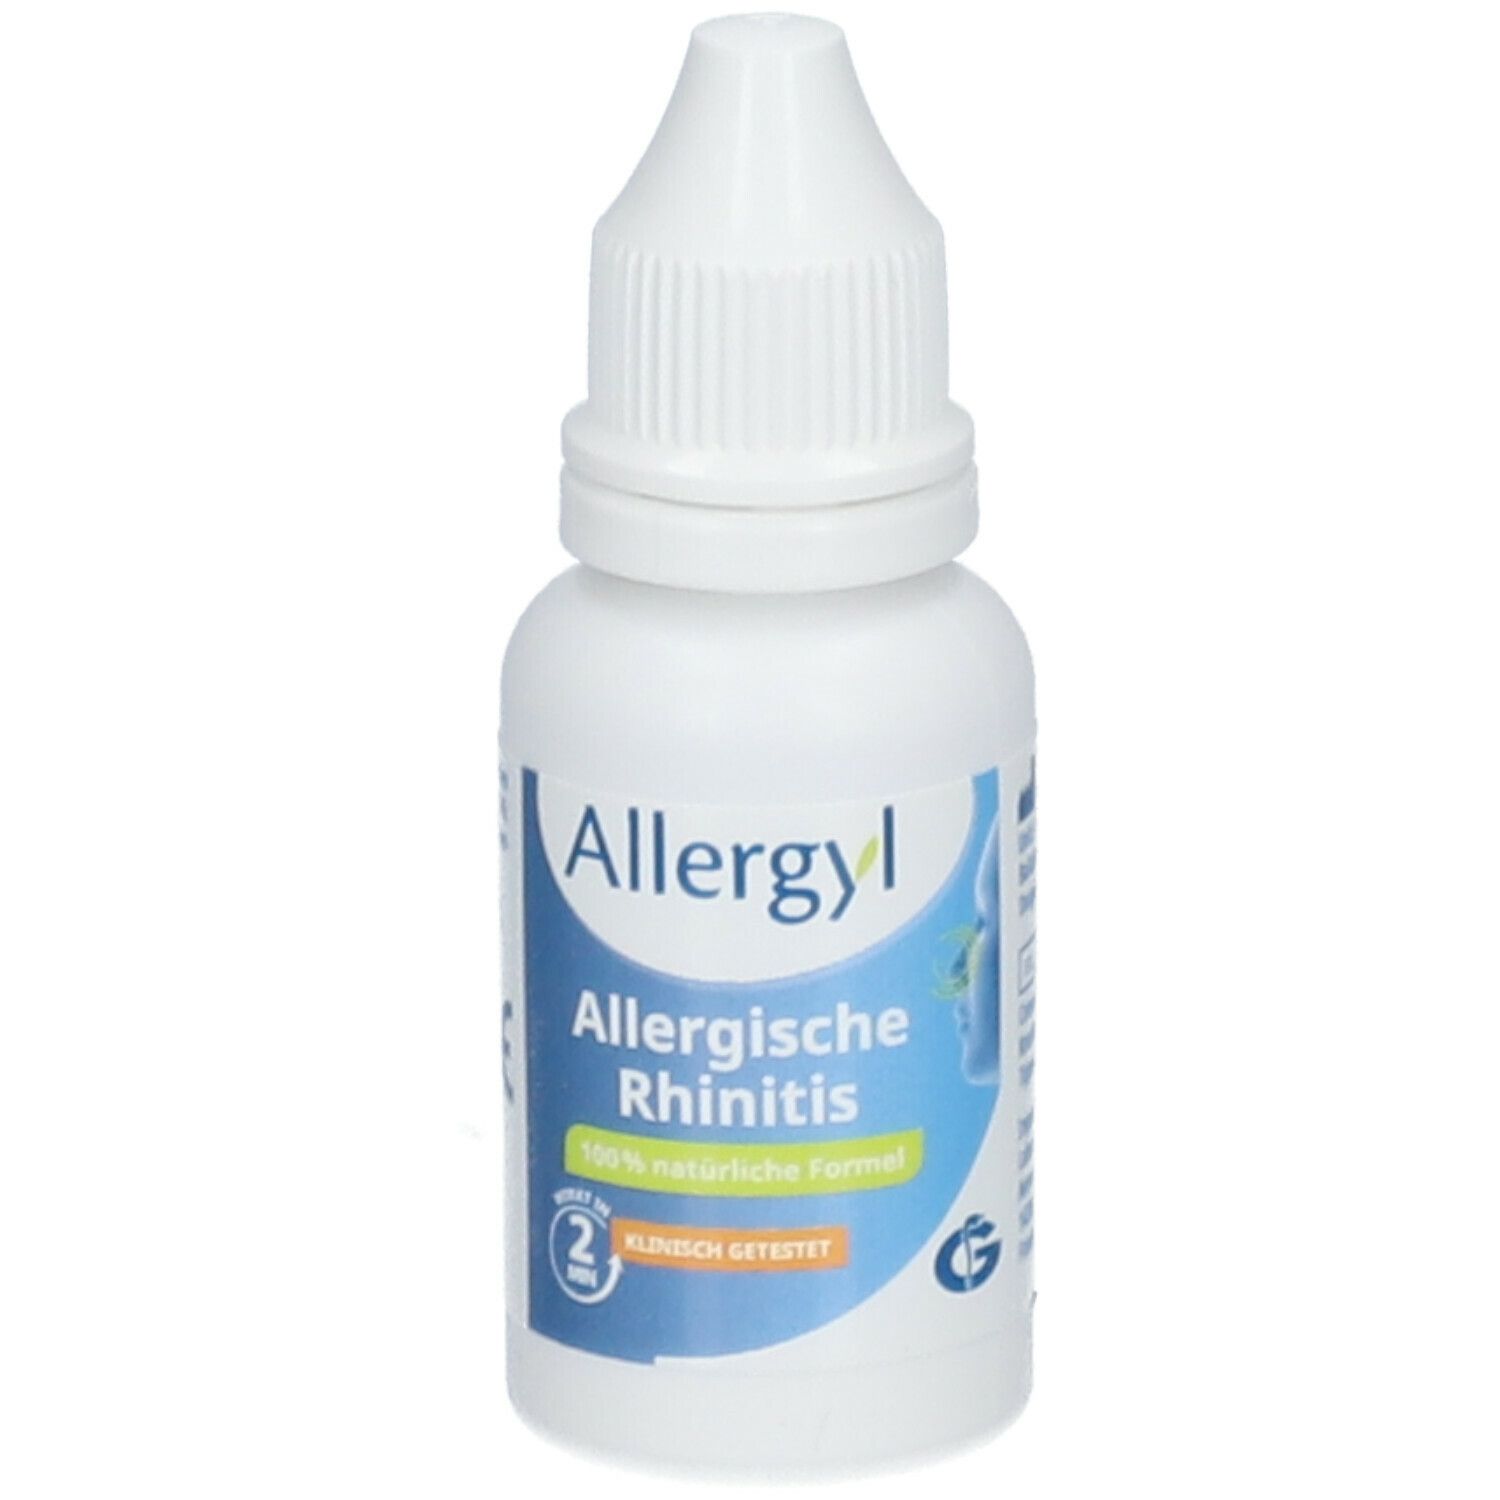 Allergyl Allergische Rhinitis